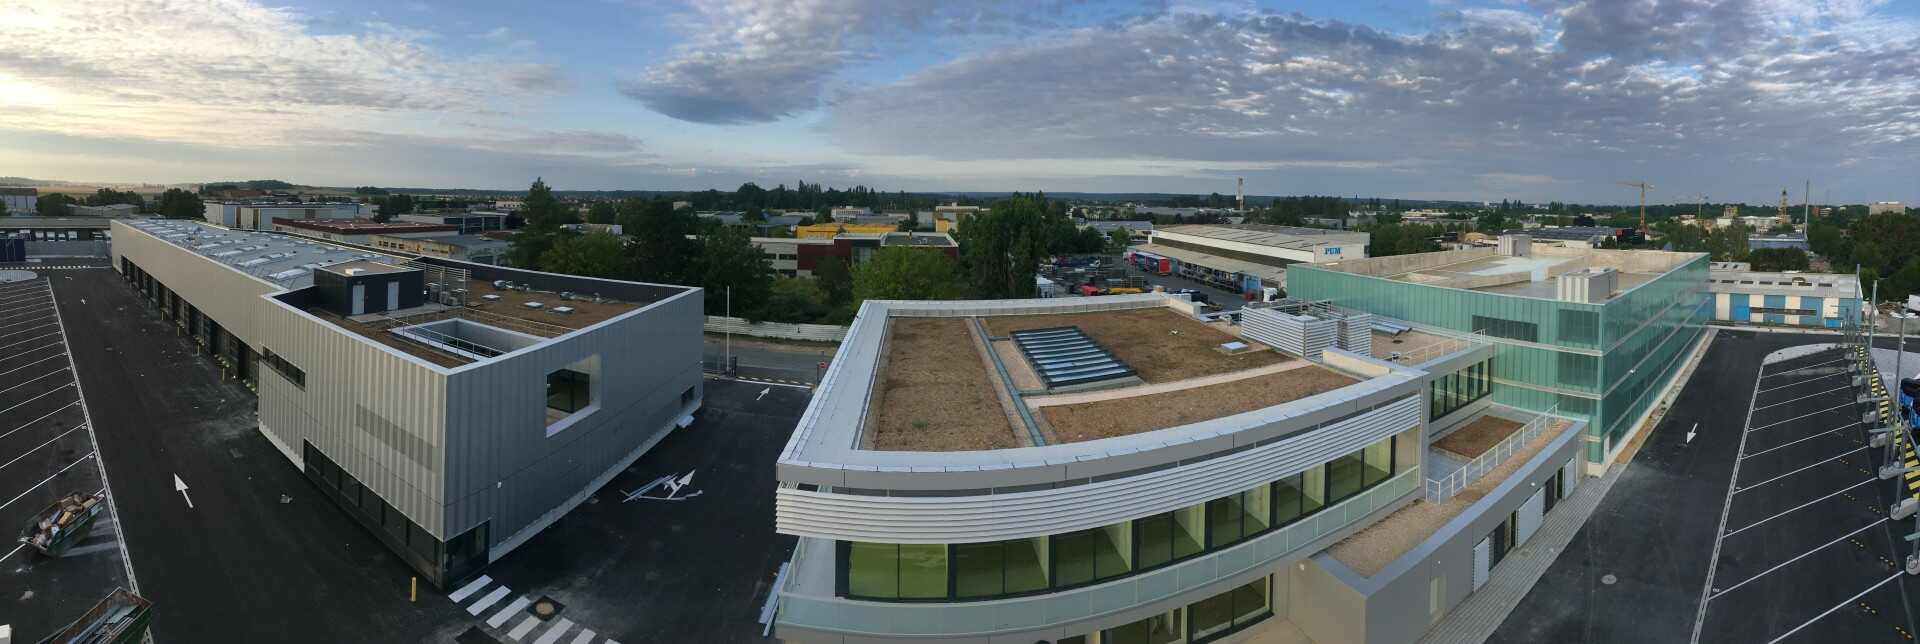 Vue panoramique des 3 bâtiments du dépôt de bus de Vaux-le-Pénil